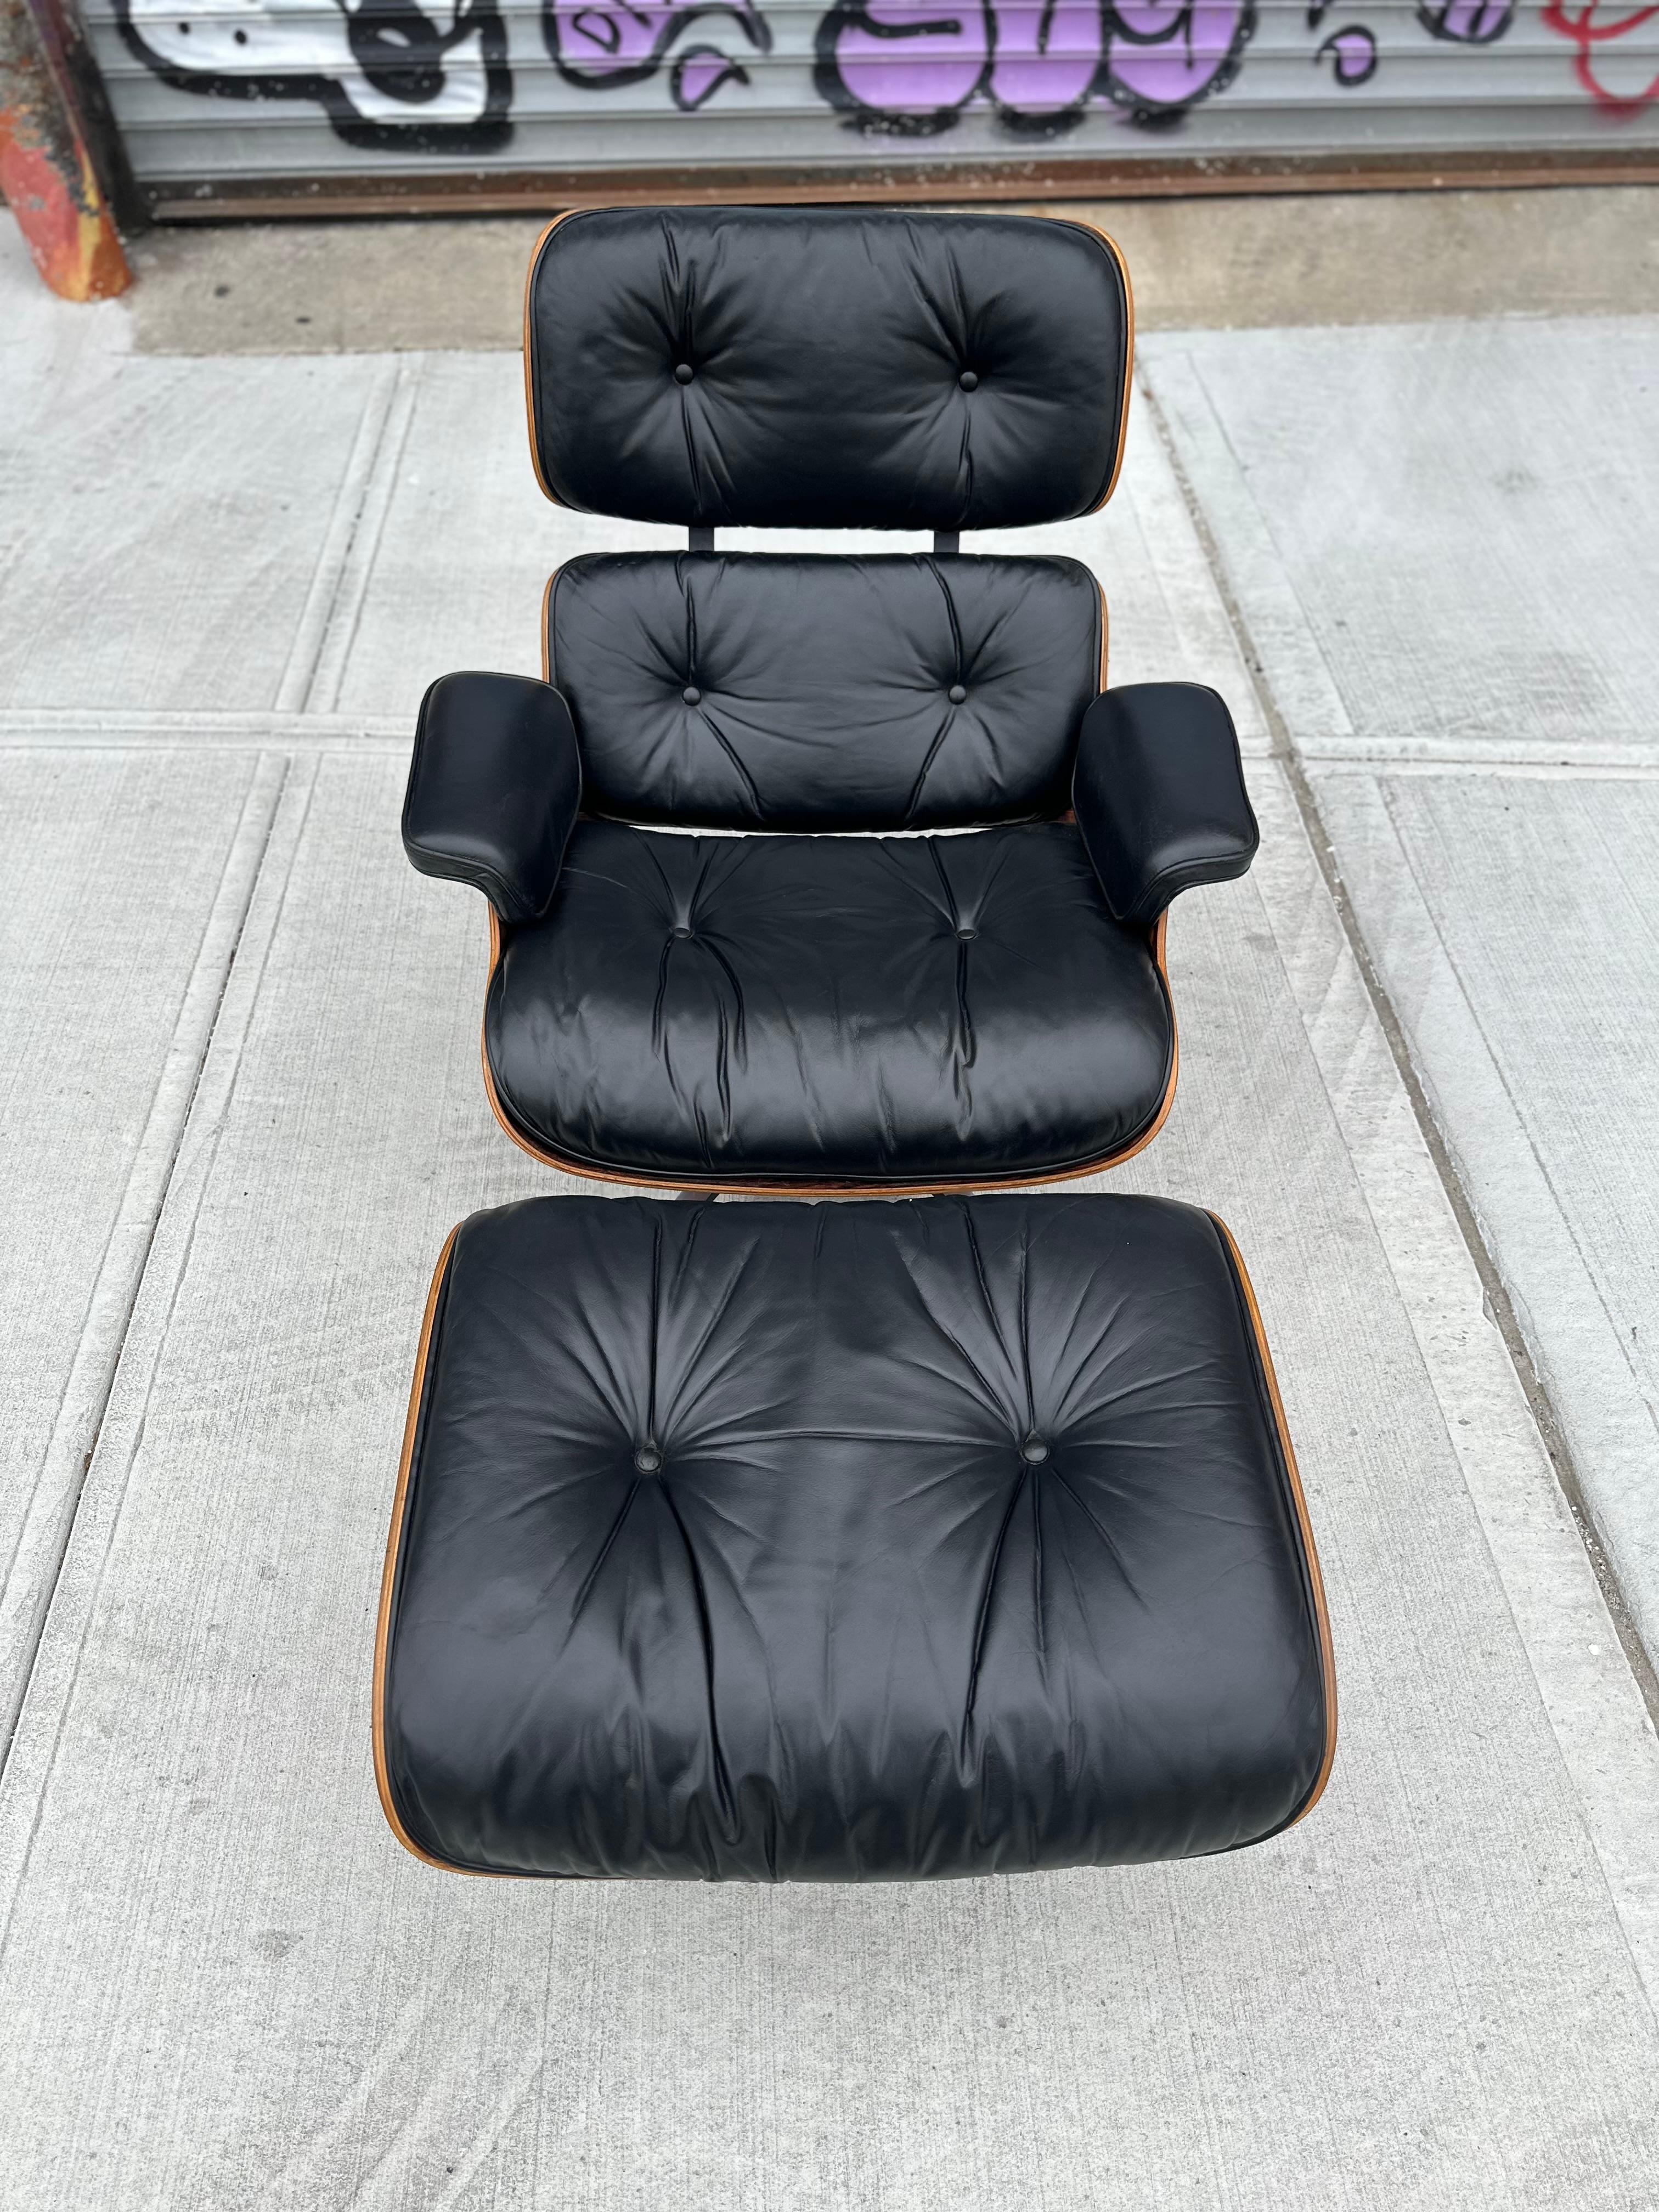 Einfach umwerfend restaurierter Eames Lounge Chair und Ottomane von Herman Miller. Spektakuläre Farbe und Maserung auf den Außenschalen. Das Holz wurde gereinigt, geölt und frisch mit einem Satinlack überzogen. Das Leder wurde behandelt,